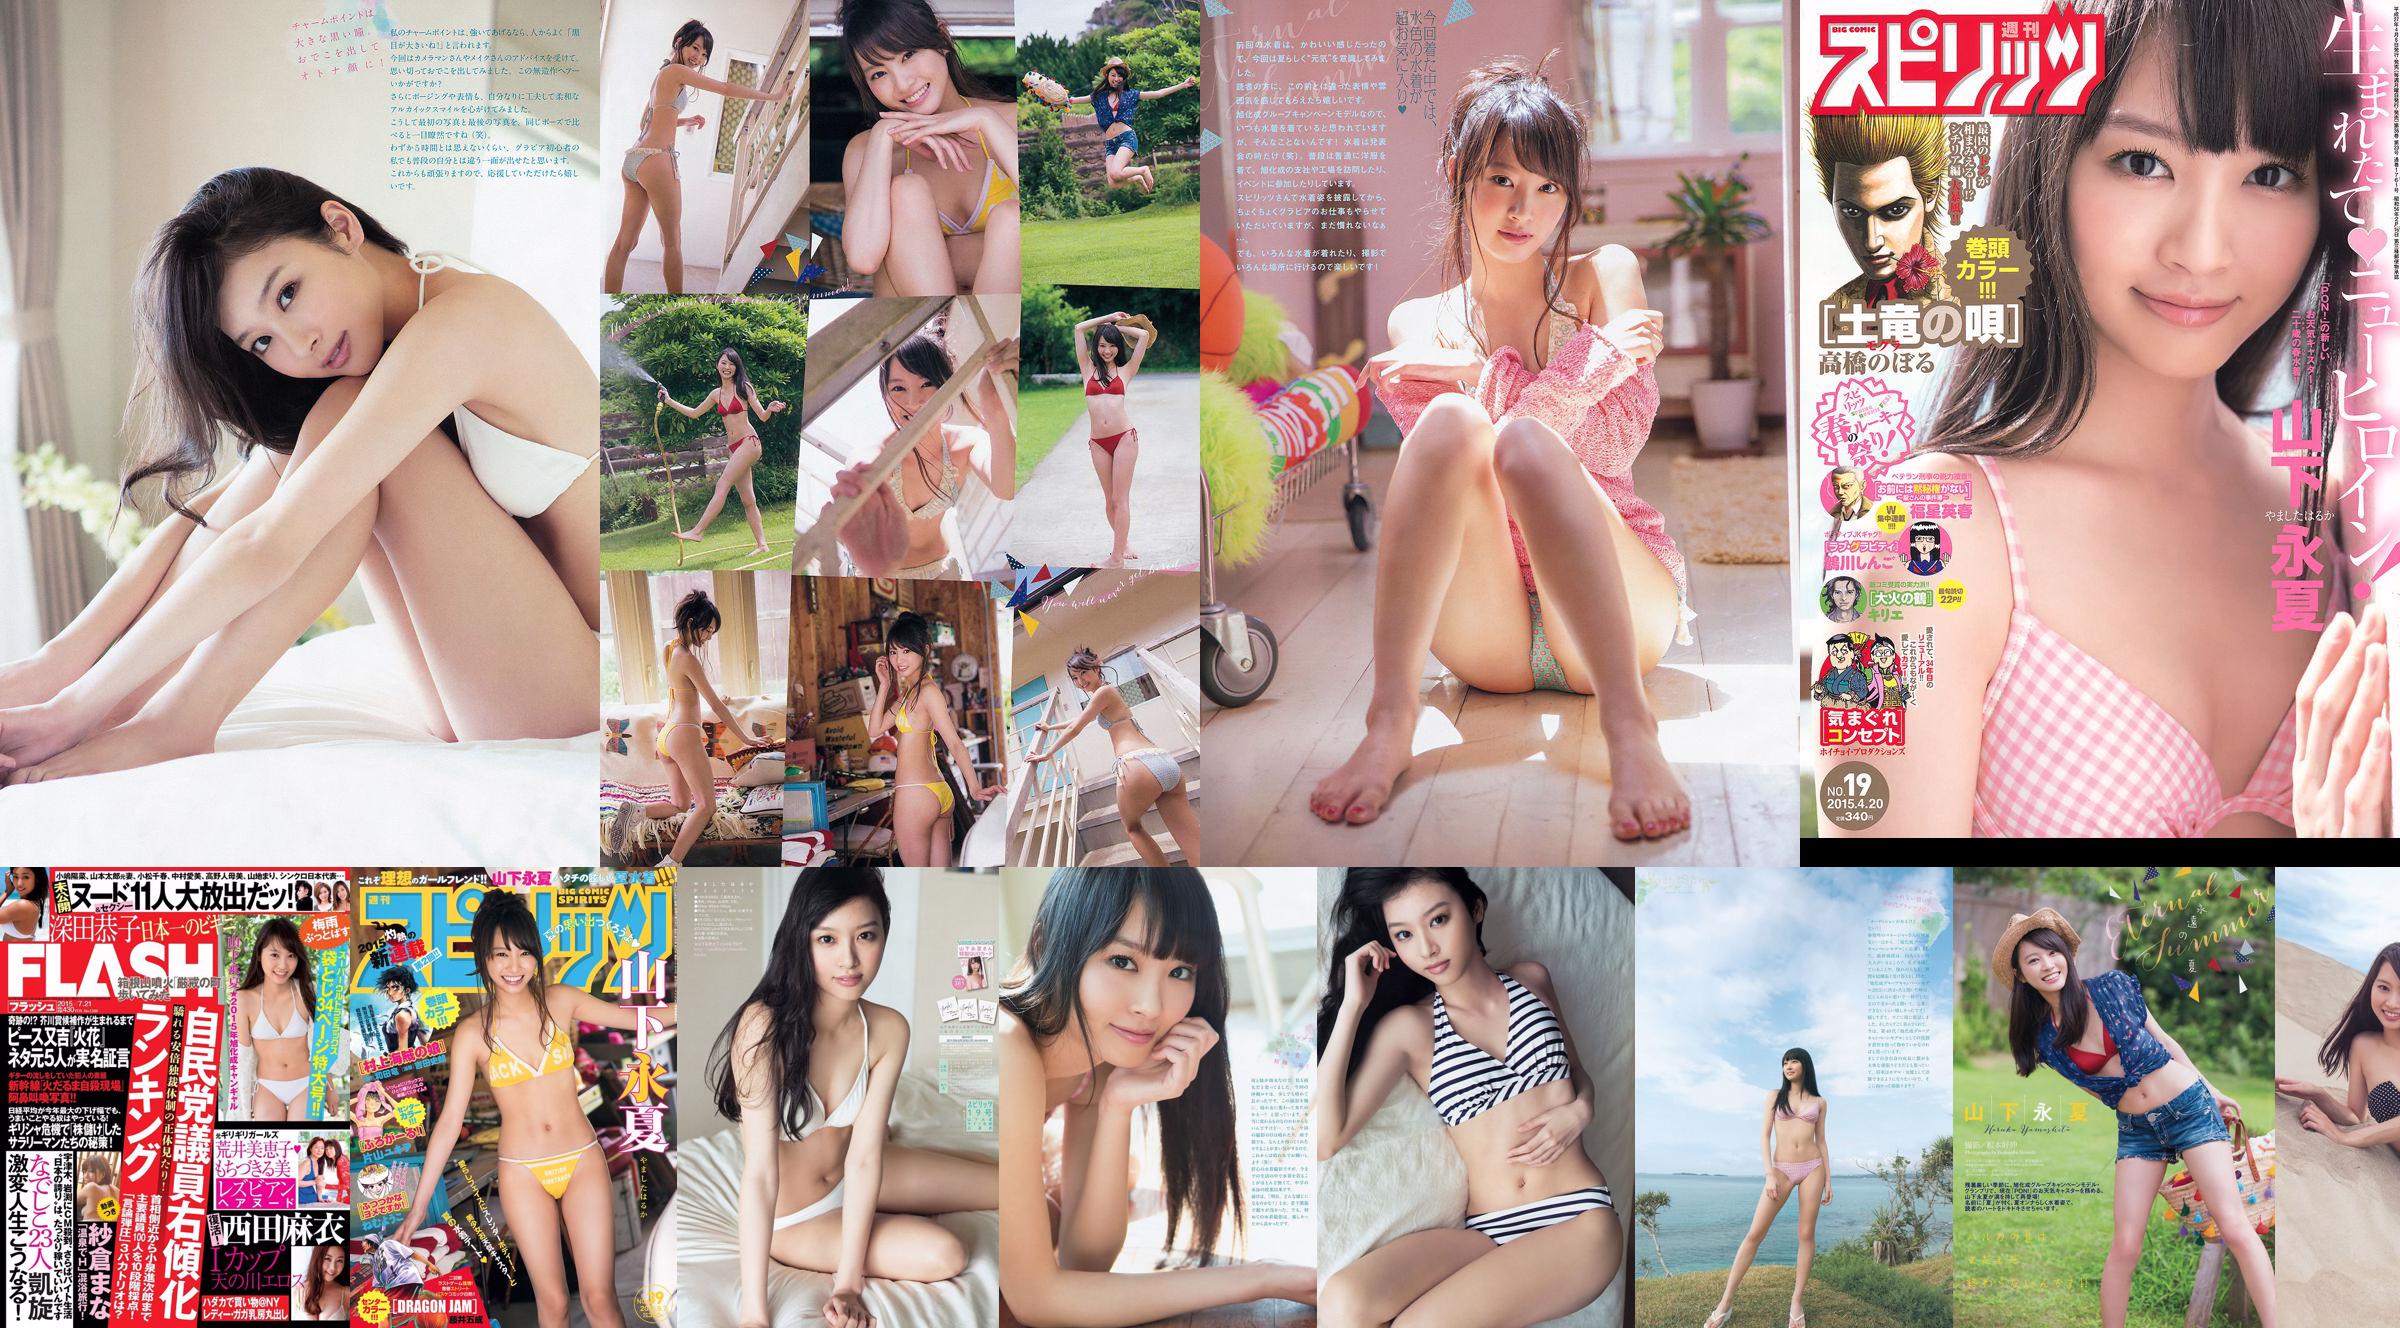 [Weekly Big Comic Spirits] Yamashita Yongxia 2015 No.39 Photo Magazine No.1fd33b Page 2